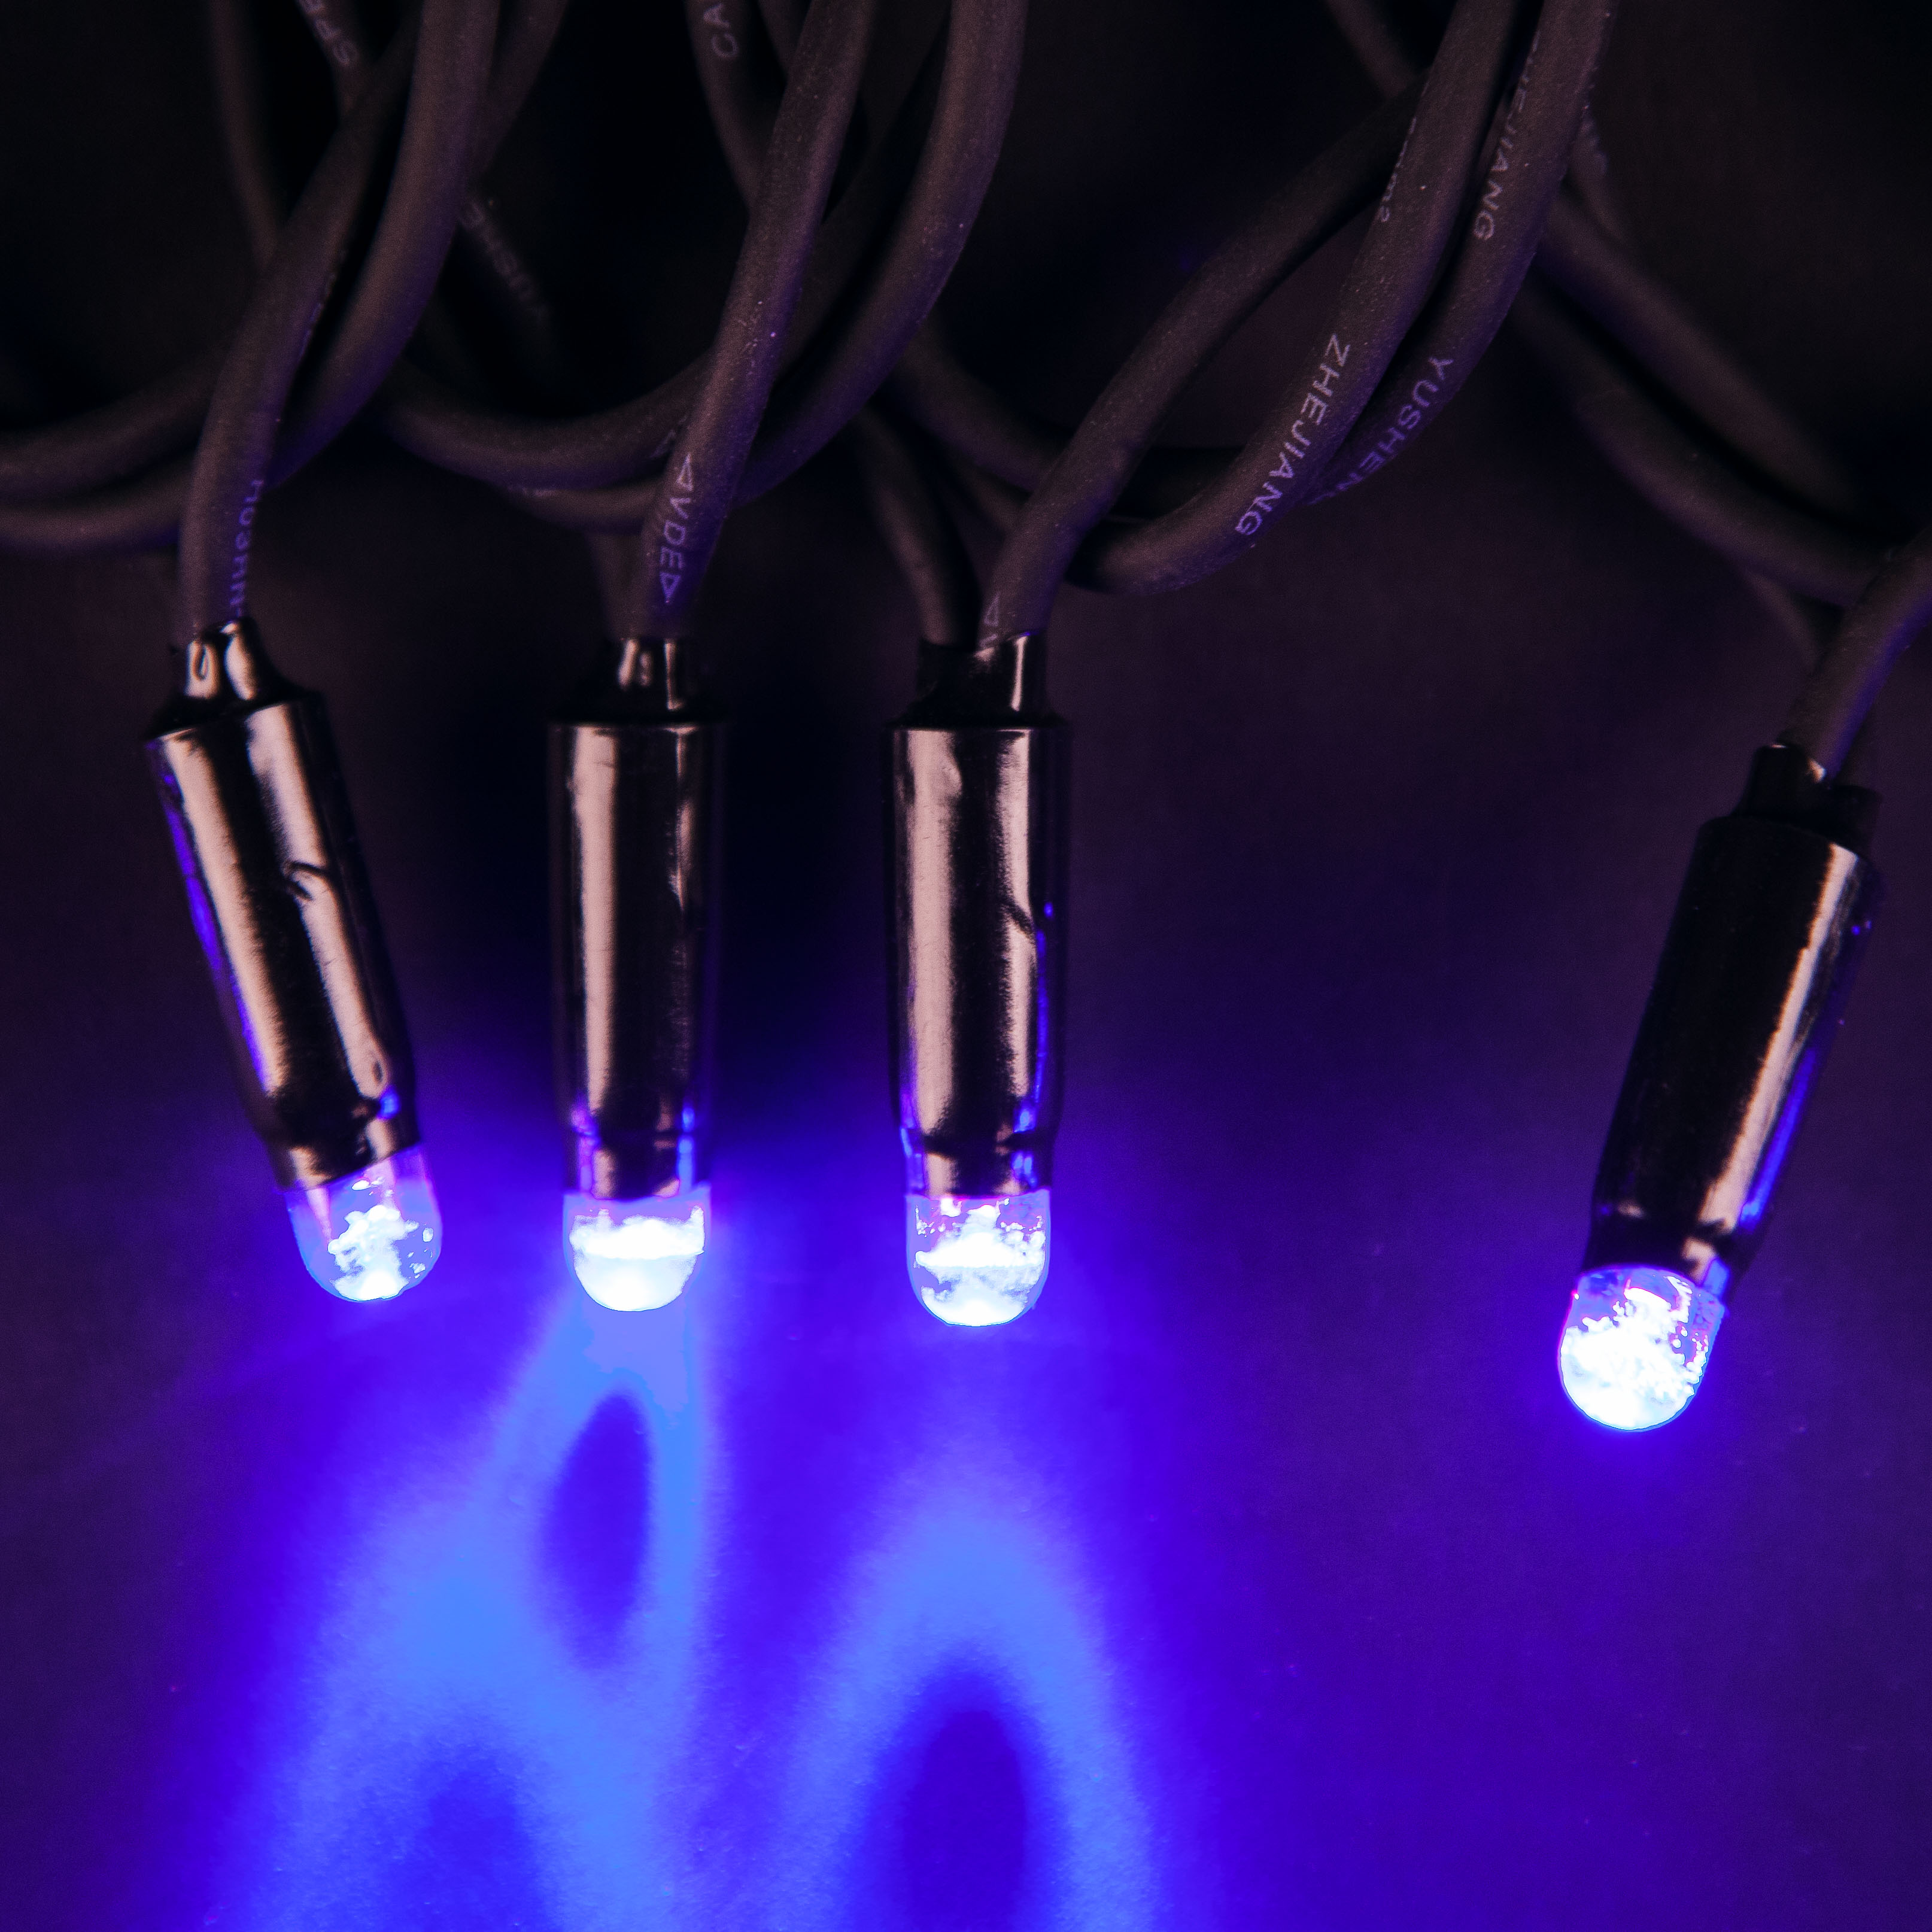 Электрогирлянда Star Trading 50 LED-ламп (465-01-TD-V), цвет фиолетовый - фото 1